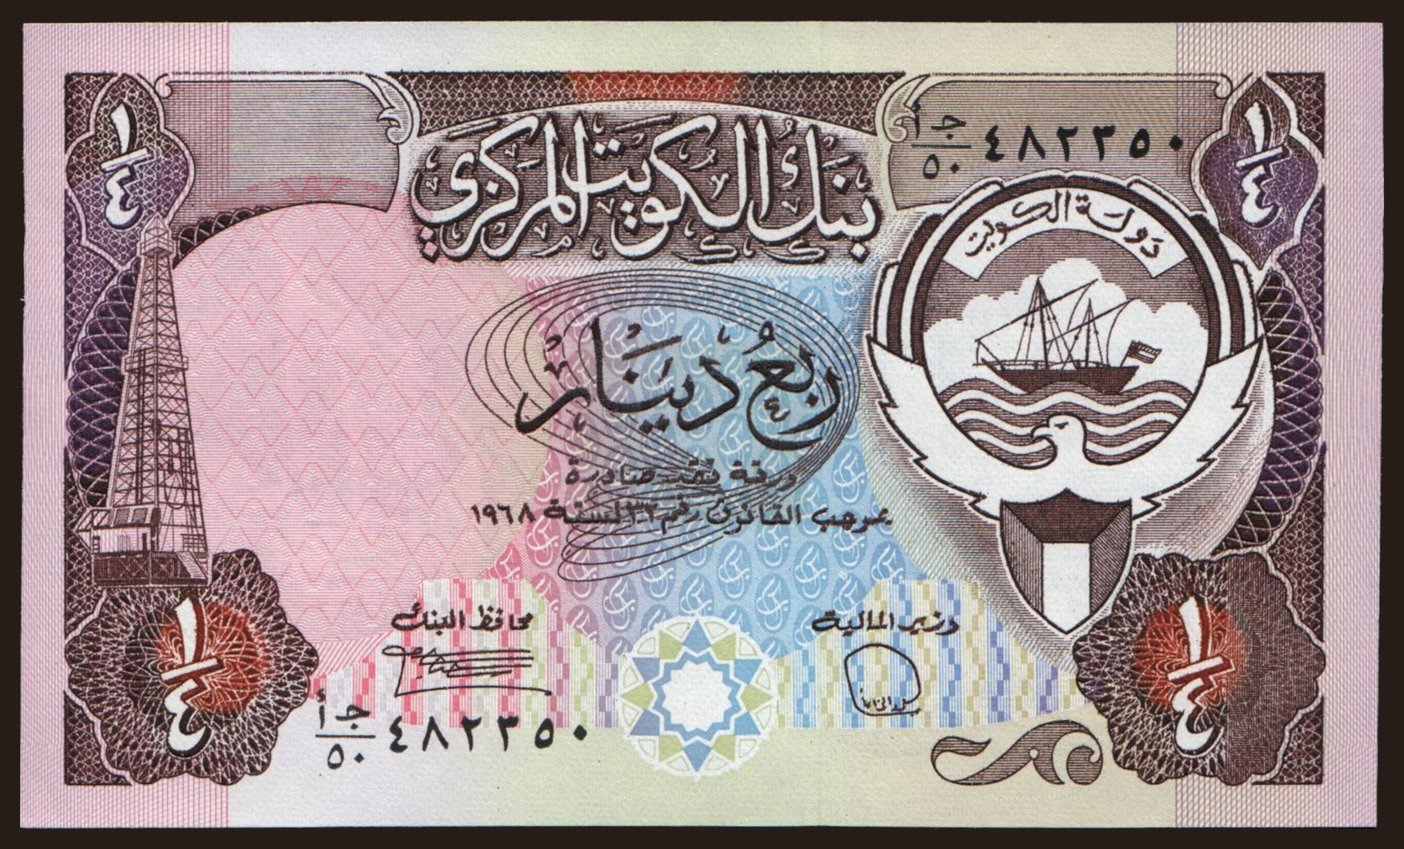 1/4 dinar, 1980